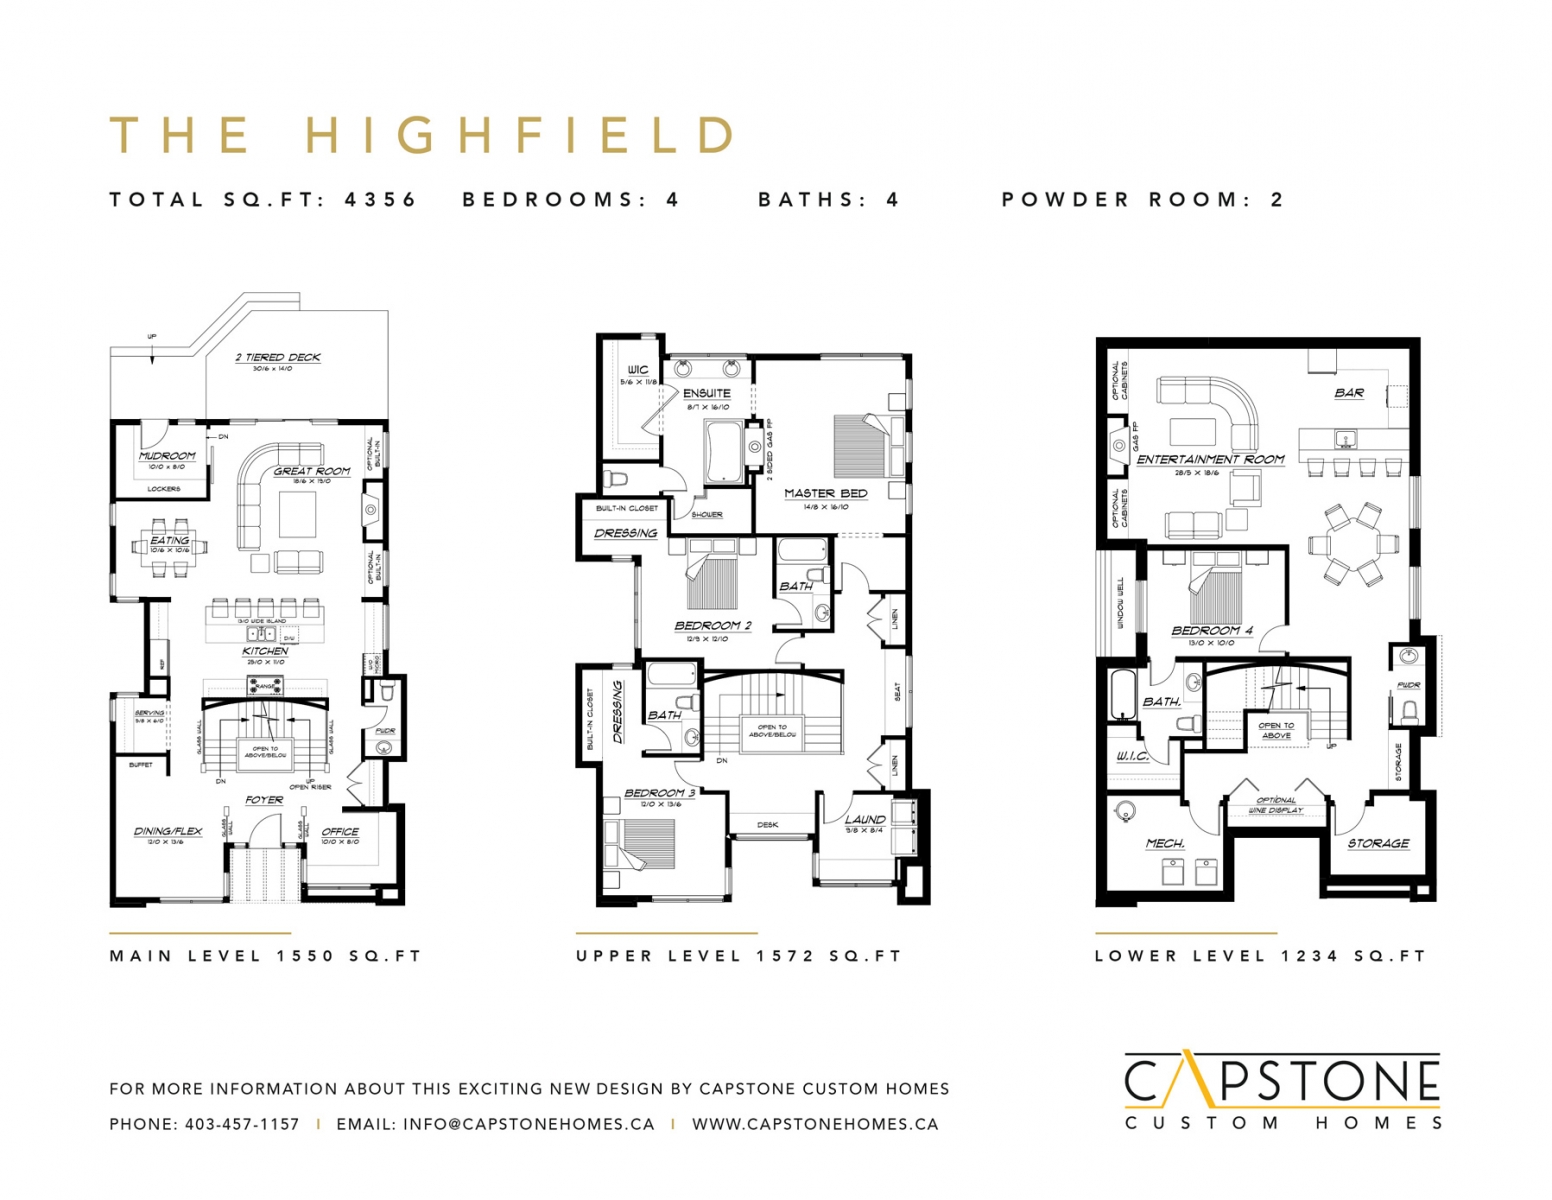 The Highfield - Feature Sheet